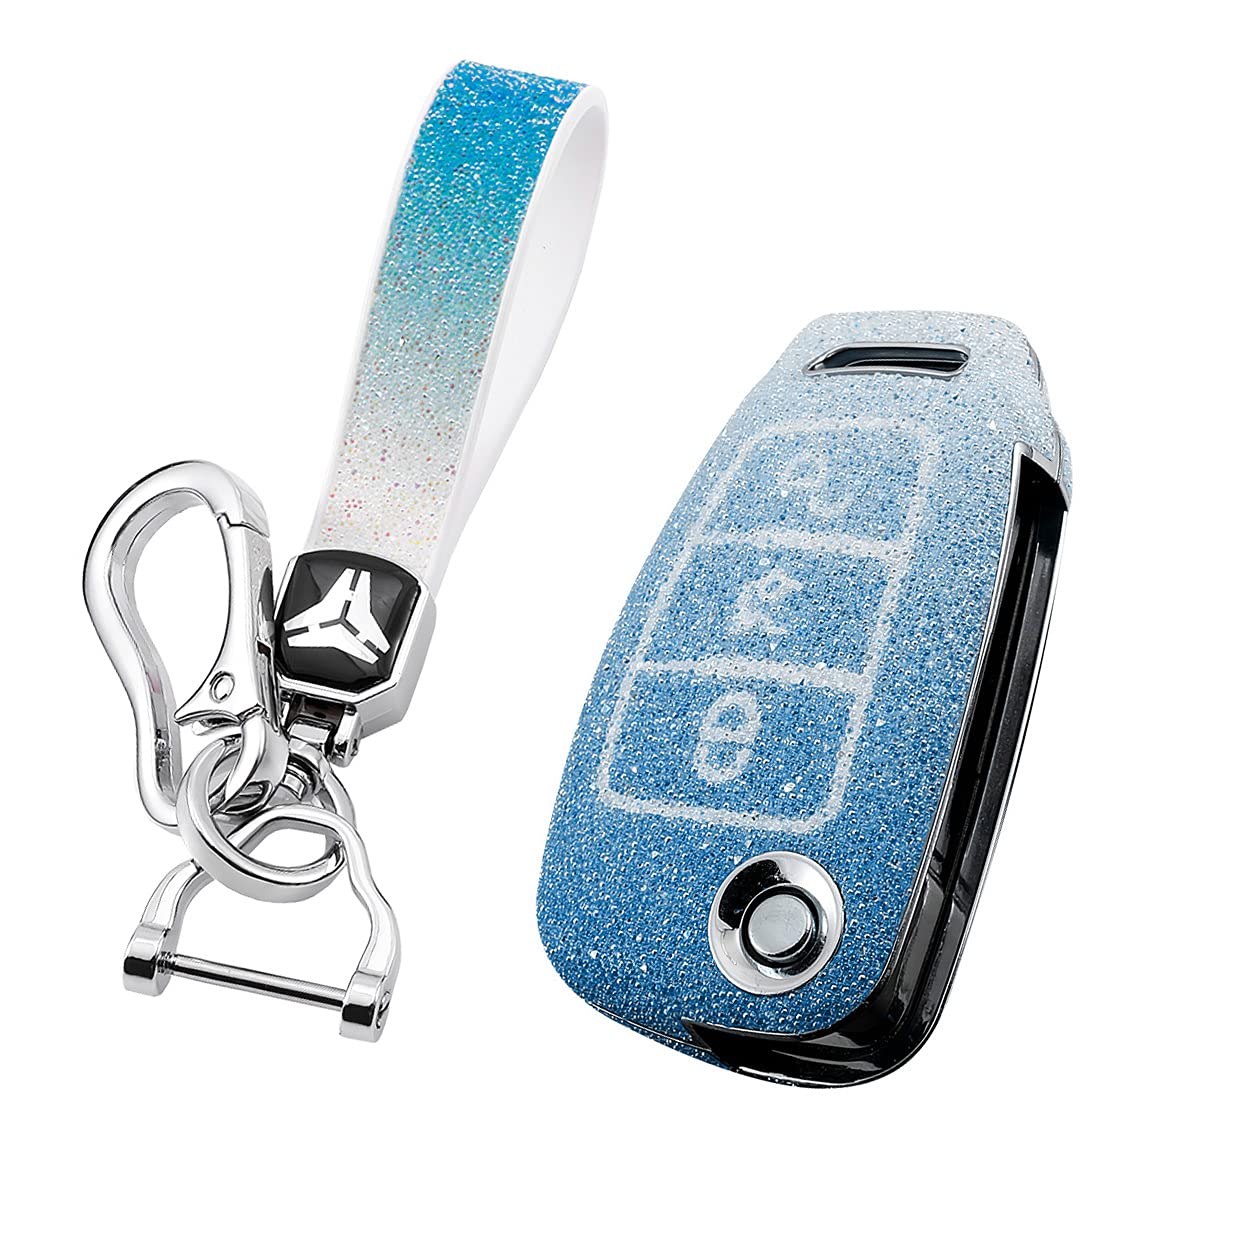 HIBEYO Bling Schlüsselhülle Passt für Audi Schutzhülle Autoschlüssel Hülle Cover für Audi A1 A3 A4 A6 Q3 Q5 Q7 S3 R8 TT Klappschlüssel Fernbedienung Schlüsselbox Schlüsselbund PC+Strass-Blau von HIBEYO